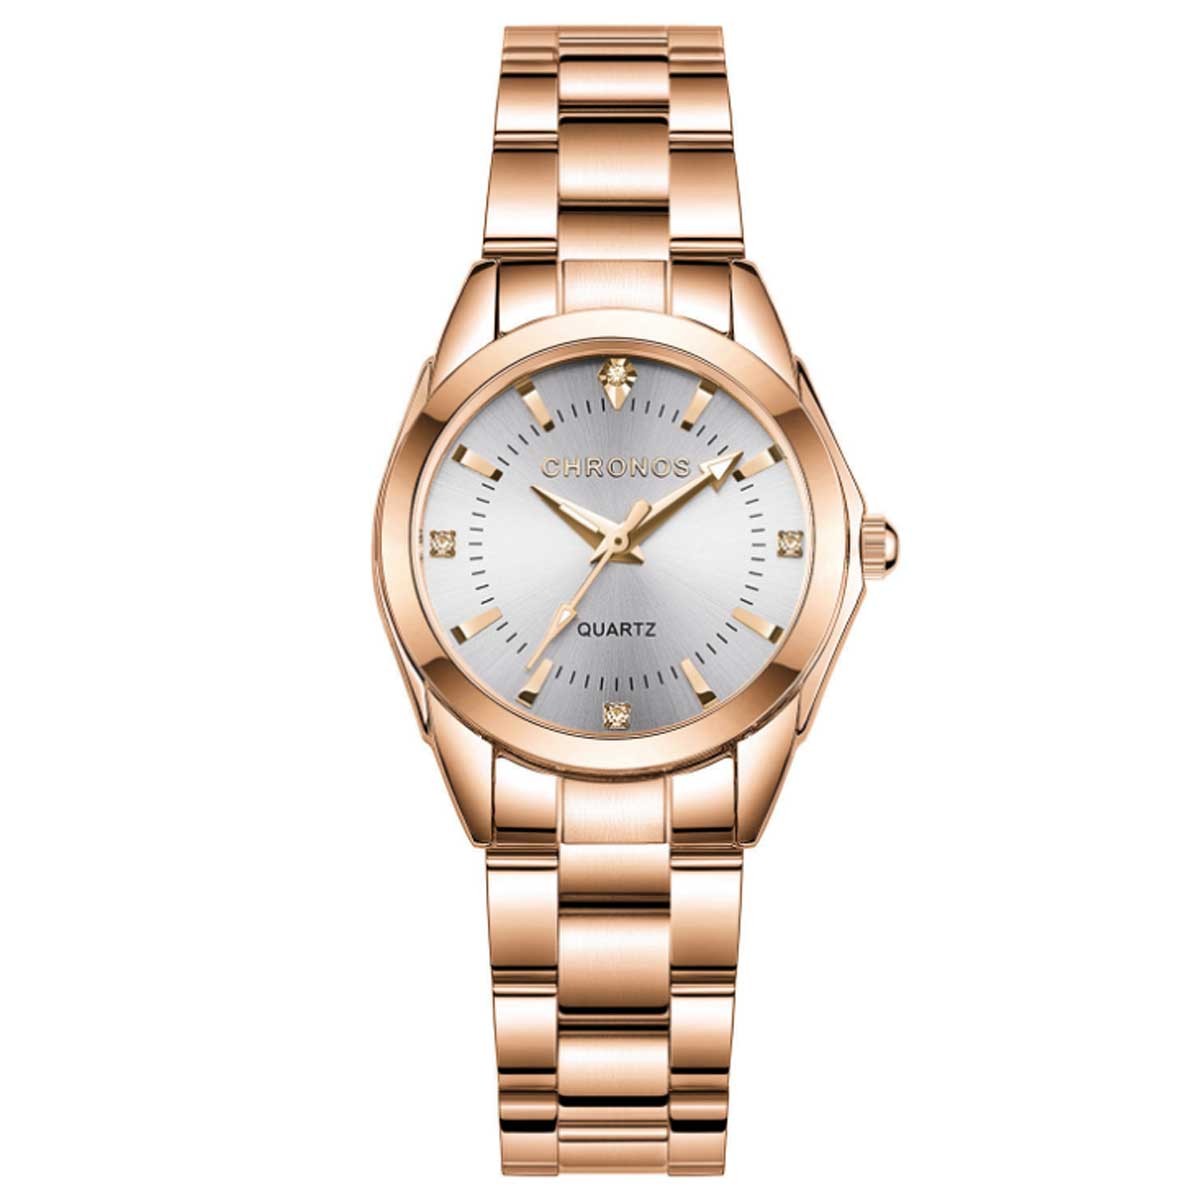 腕時計 レディース おしゃれ 安い オンオフ使える腕時計 ステンレス28mmレディースウォッチ 腕時計 時計 ビジネス時計 カジュアル時計  レディース時計 生活防水